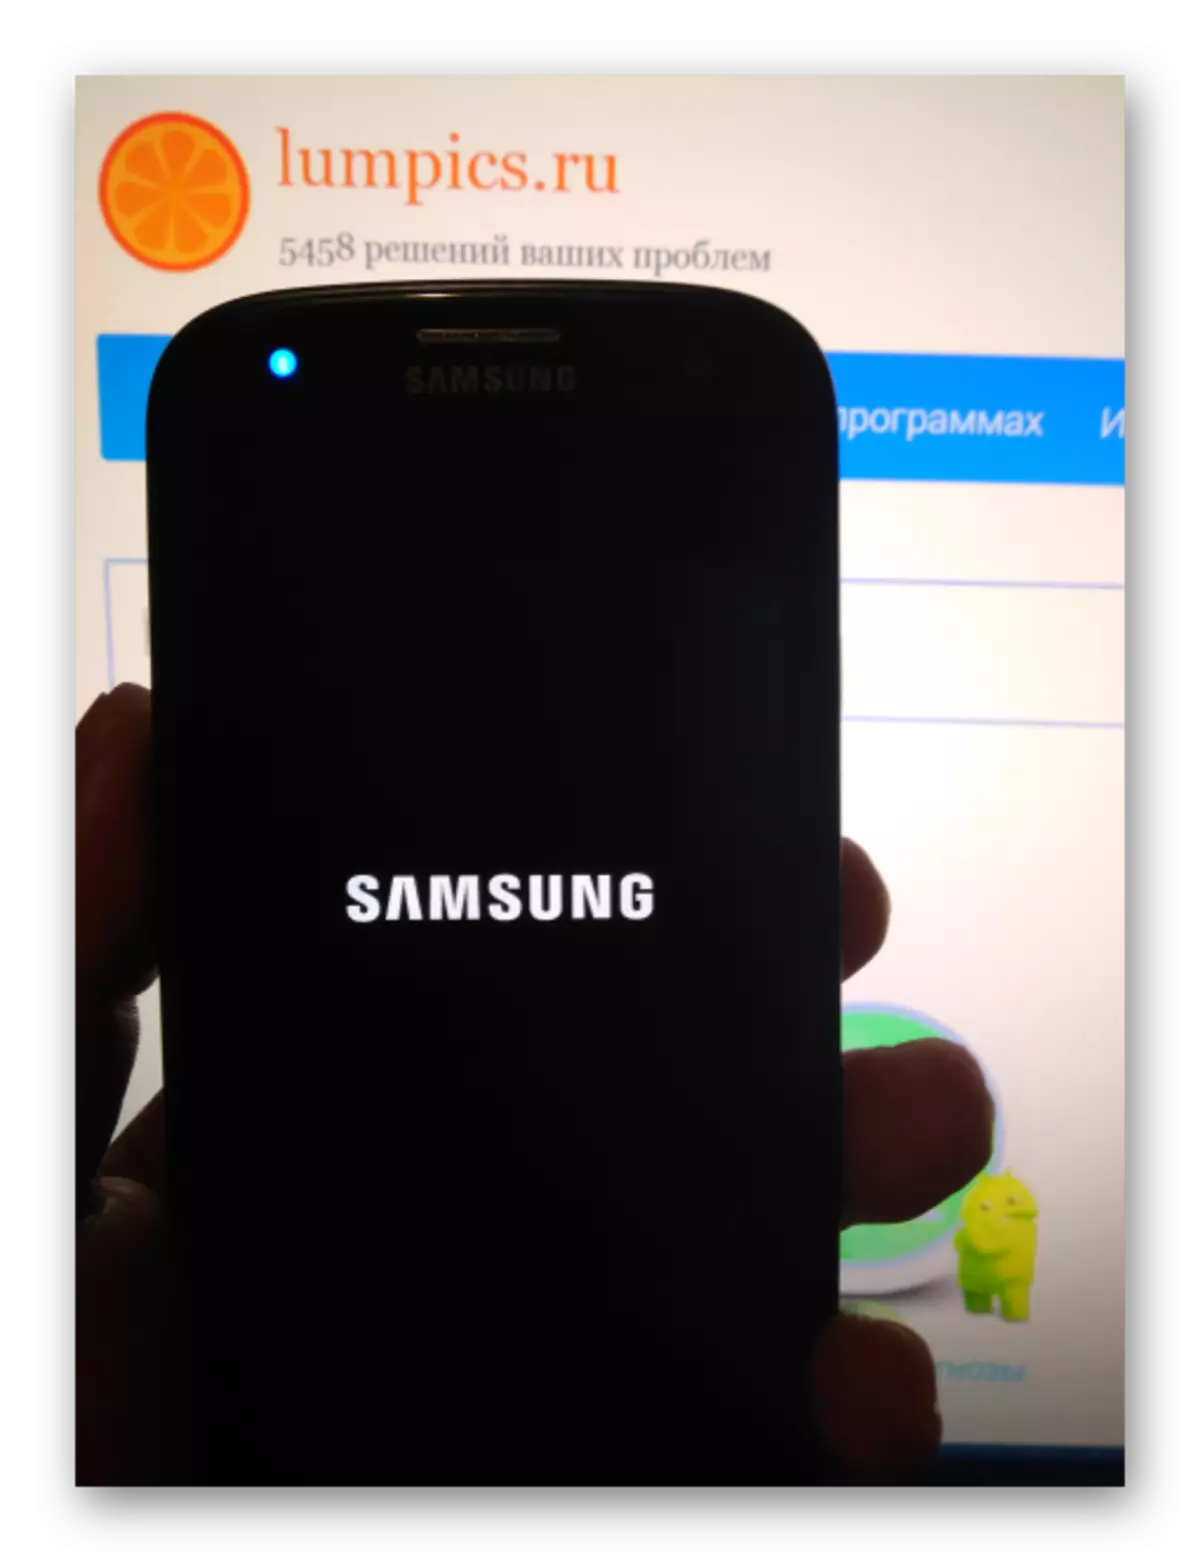 Samsung Galaxy S3 GT-I9300 llançarà Android després del microprogramari mitjançant Mobile Odin